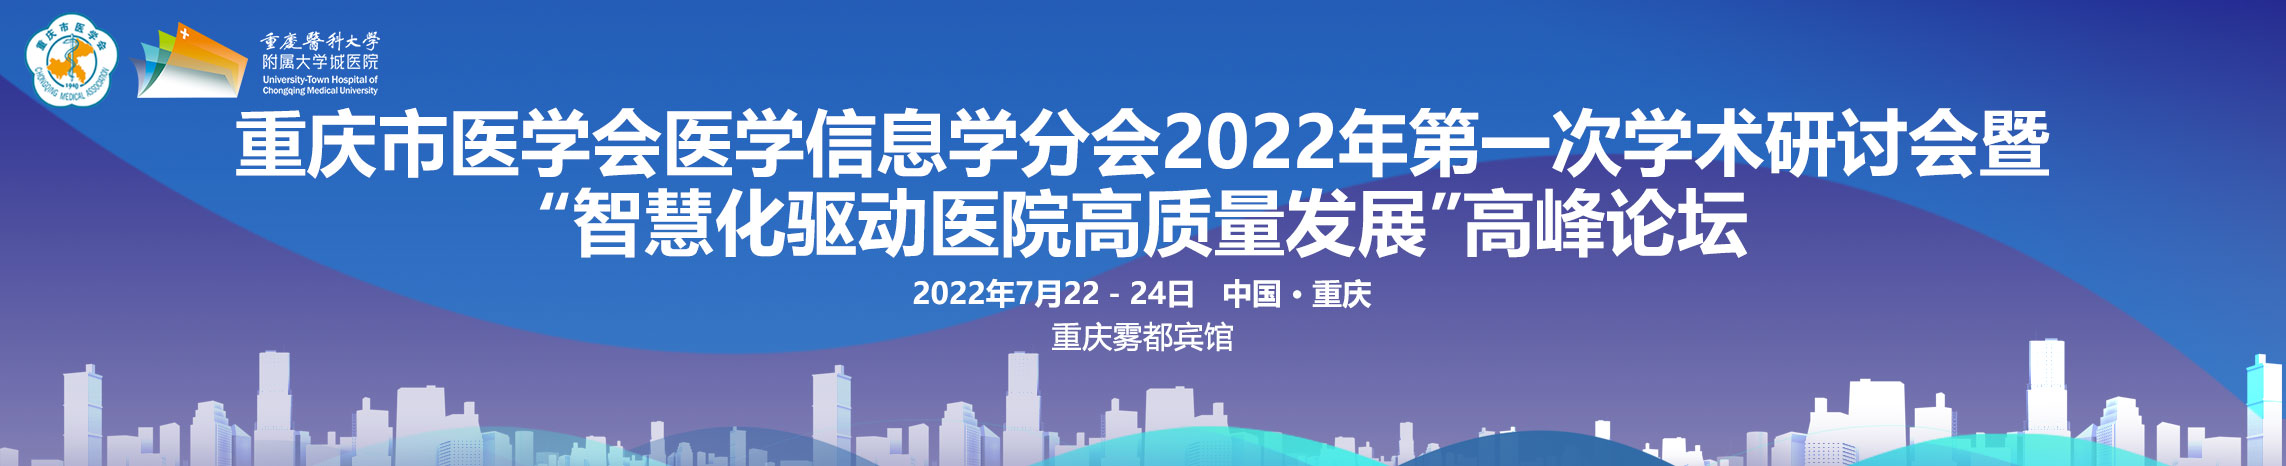 重庆市医学会医学信息学分会2022年第一次学术研讨会暨“智慧化驱动医院高质量发展”高峰论坛